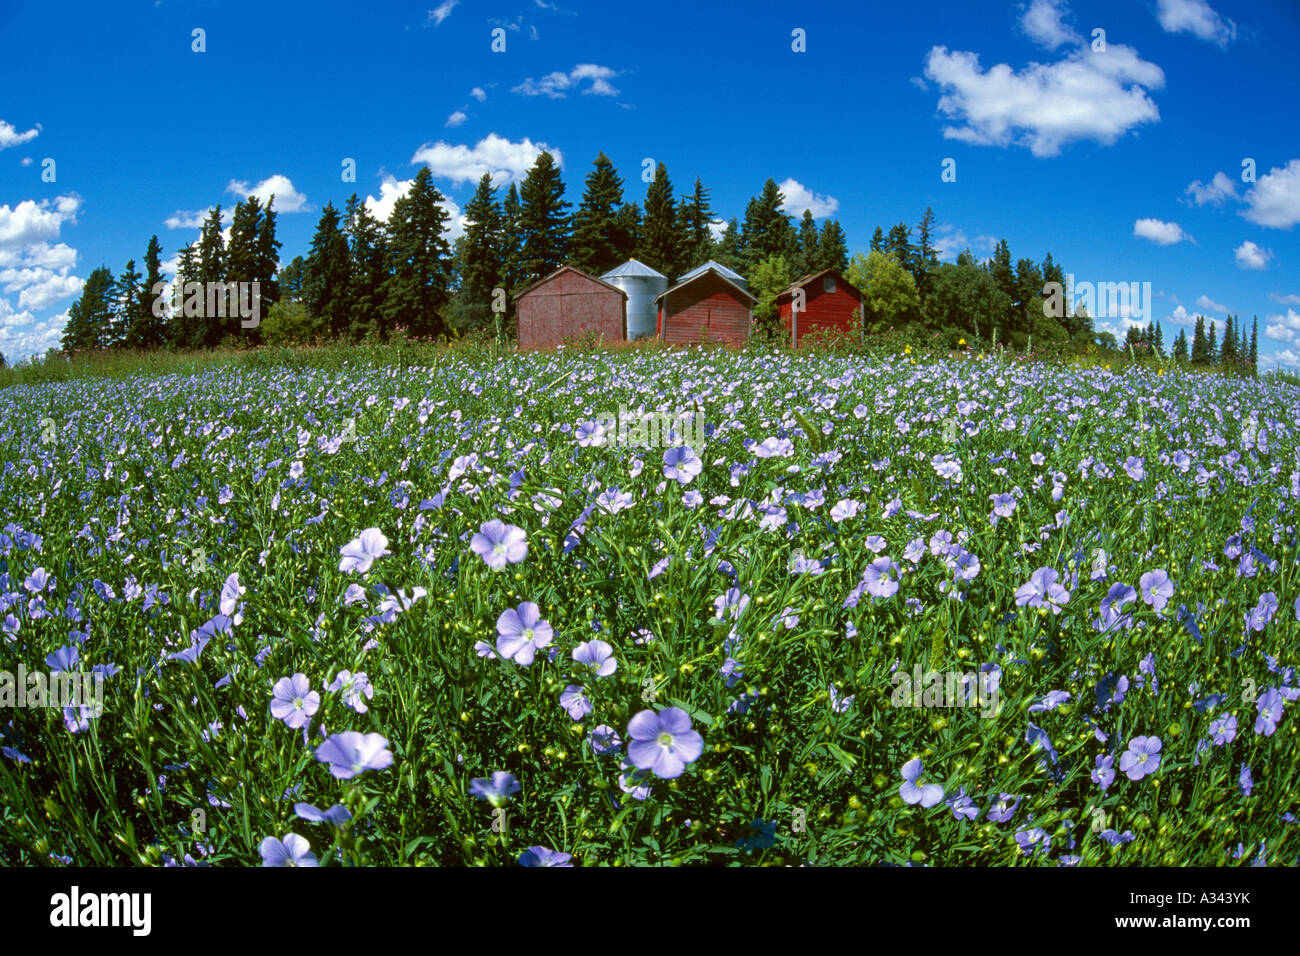 Landwirtschaft - Grossfeld Mitte Wachstum Flachs Pflanzen in voller Blüte / in der Nähe von Killarney, Manitoba, Kanada. Stockfoto